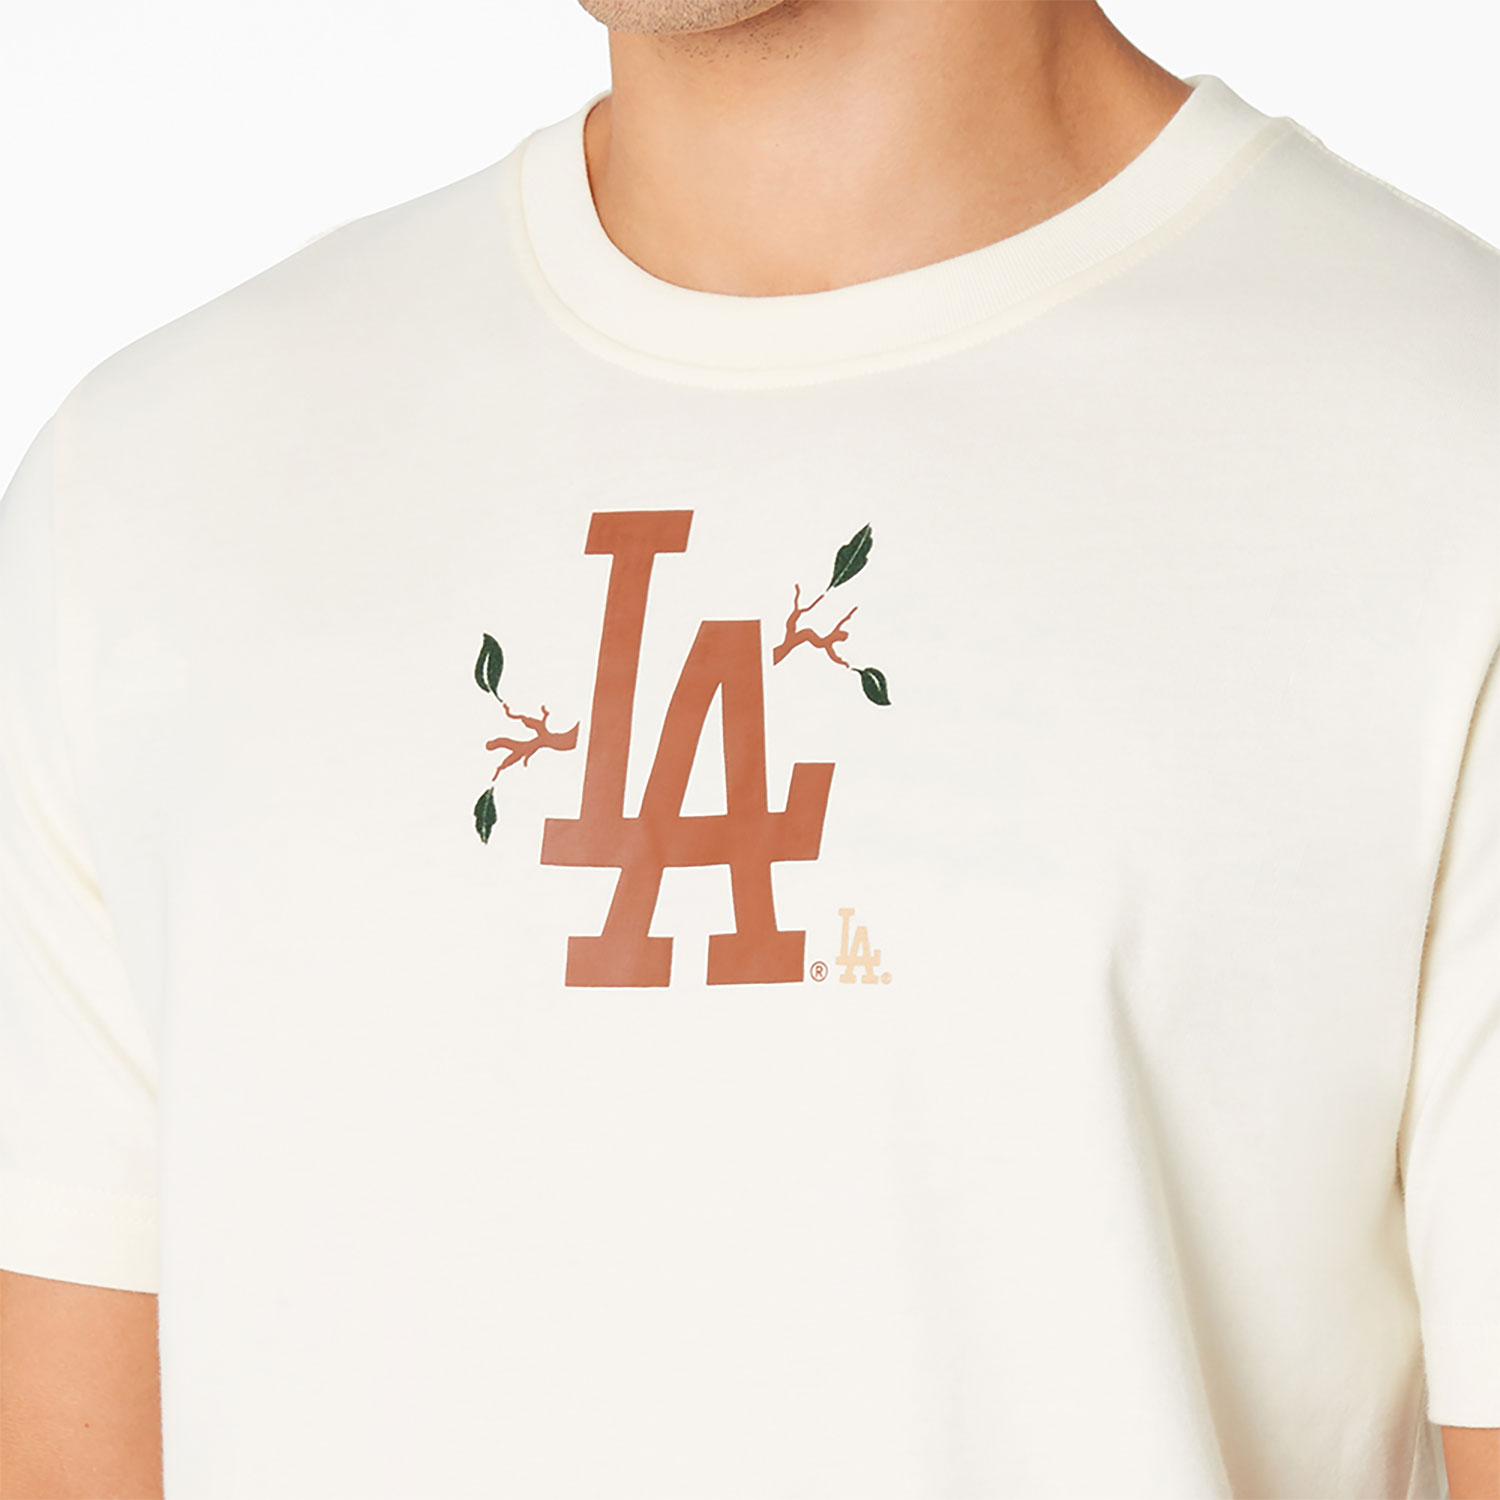 LA Dodgers Camp White T-Shirt